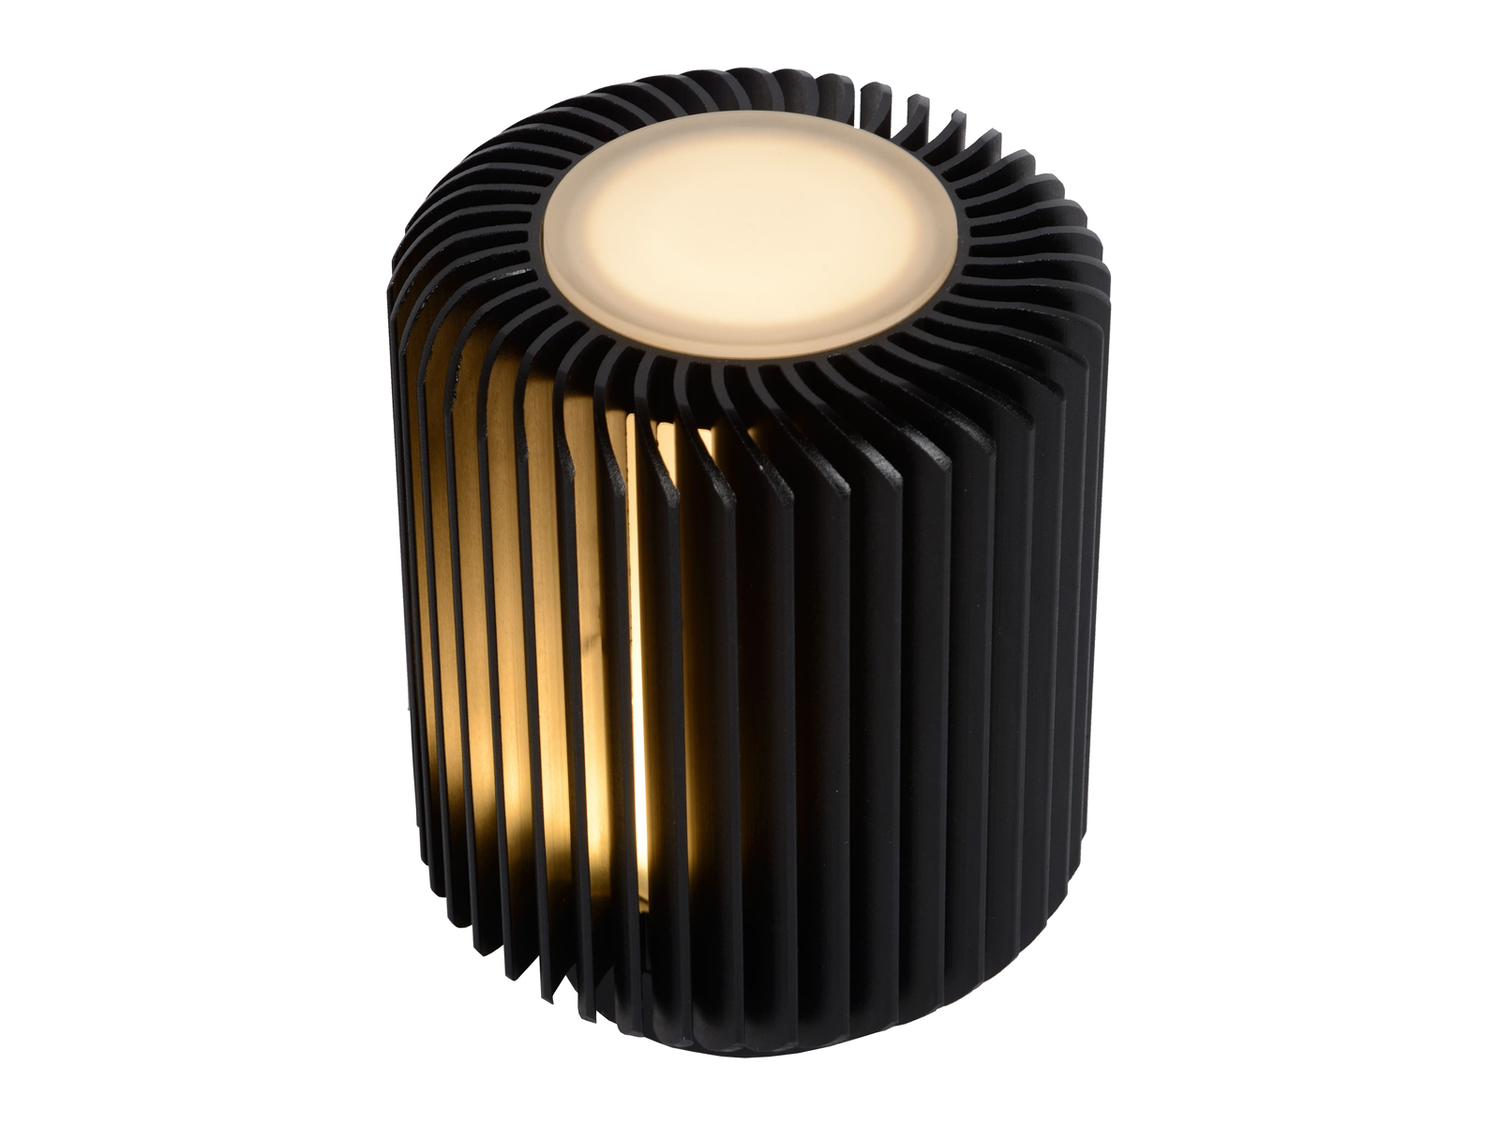 Stolní LED lampa Turbin černá, 5W, 3000K, 13,7cm